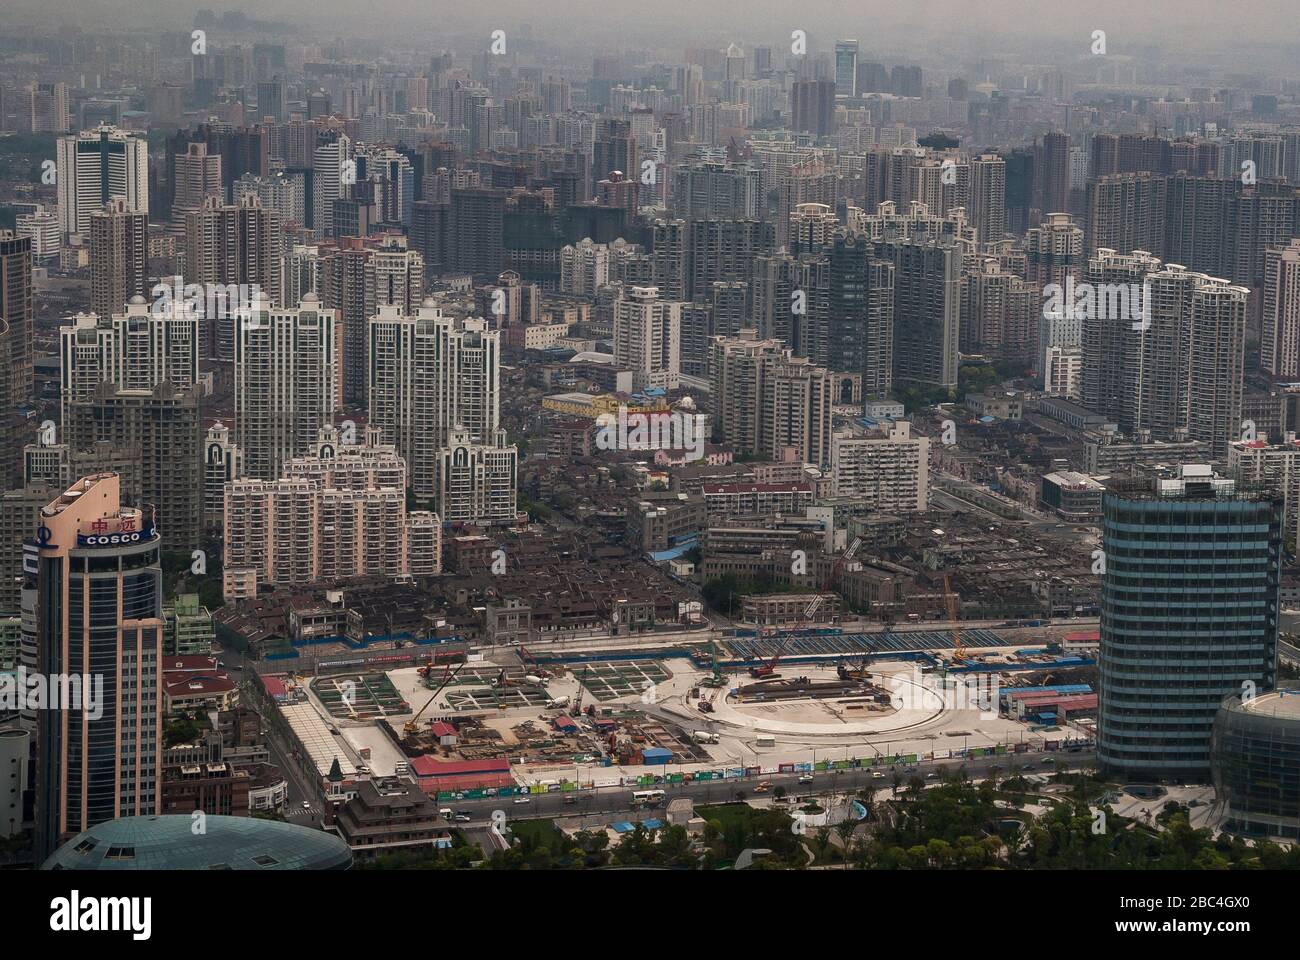 Shanghai, Pudong, Lujiazui, China - 4. Mai 2010: Große Fläche für den Bau eines weiteren Wolkenkratzers vorbereitet. In einem Meer bestehenden Hochhaus Stockfoto